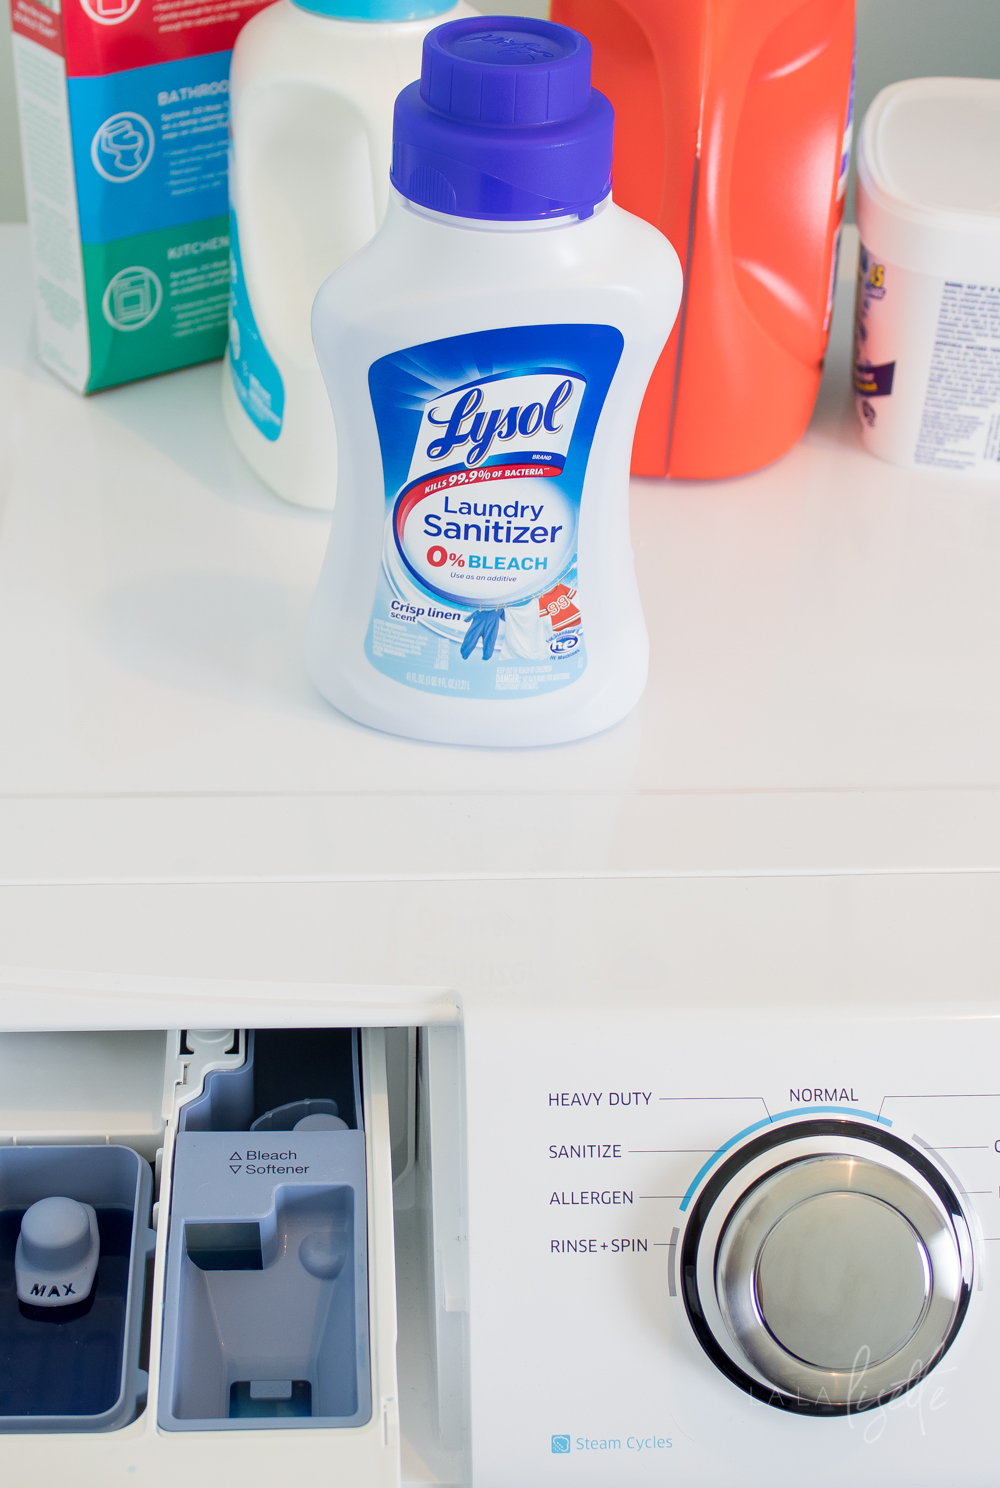 Lysol Laundry Sanitizer on washing machine